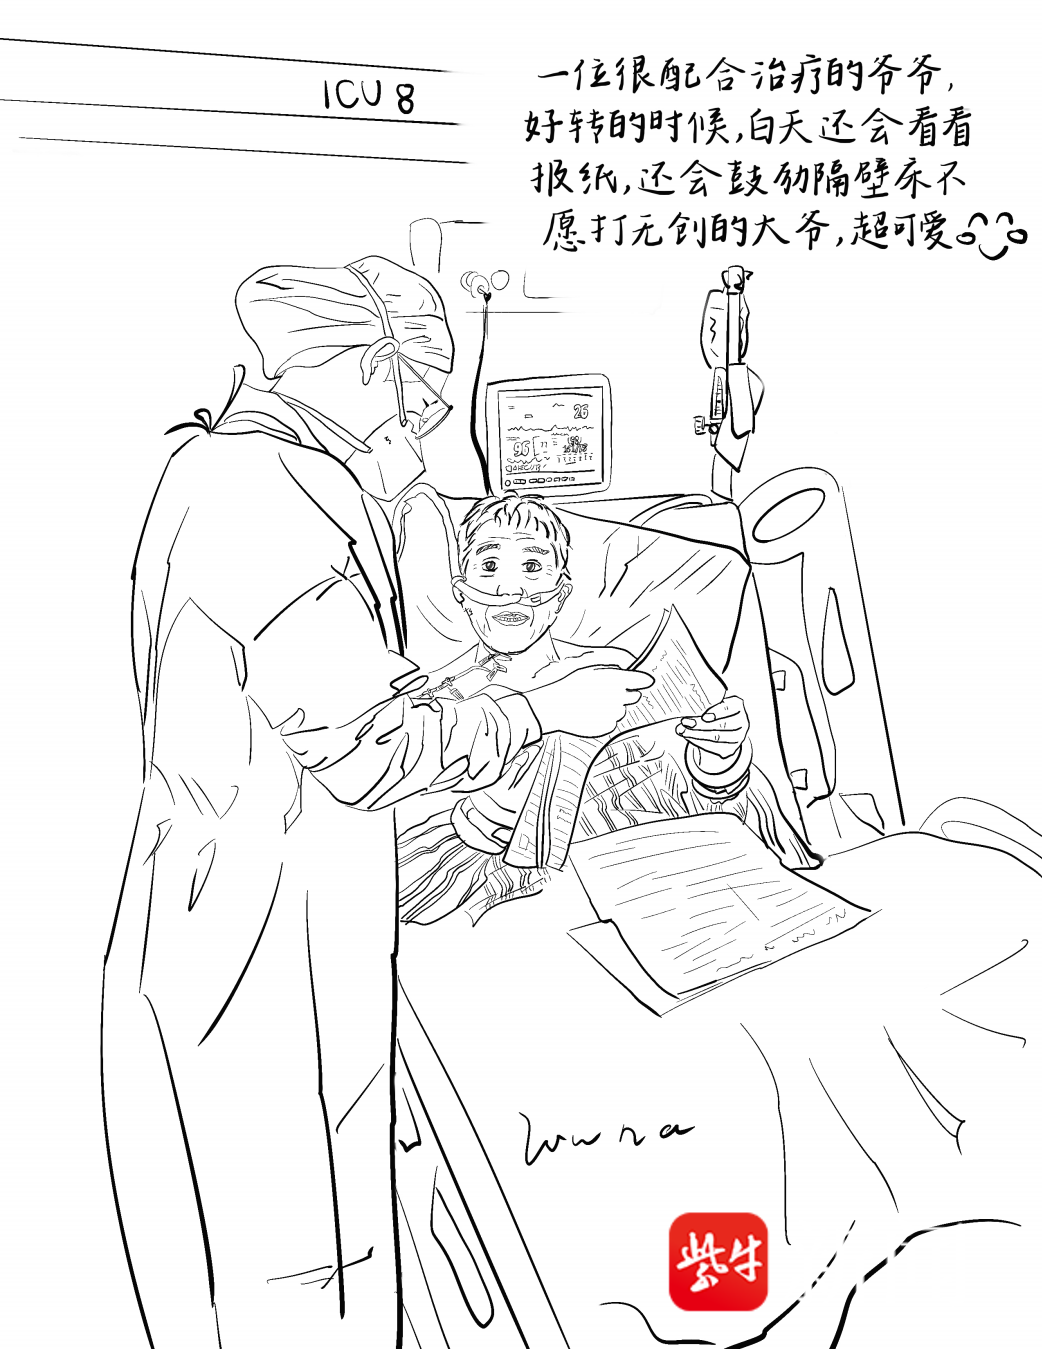 开启医患间“心门” 护士手绘漫画记录ICU工作点滴